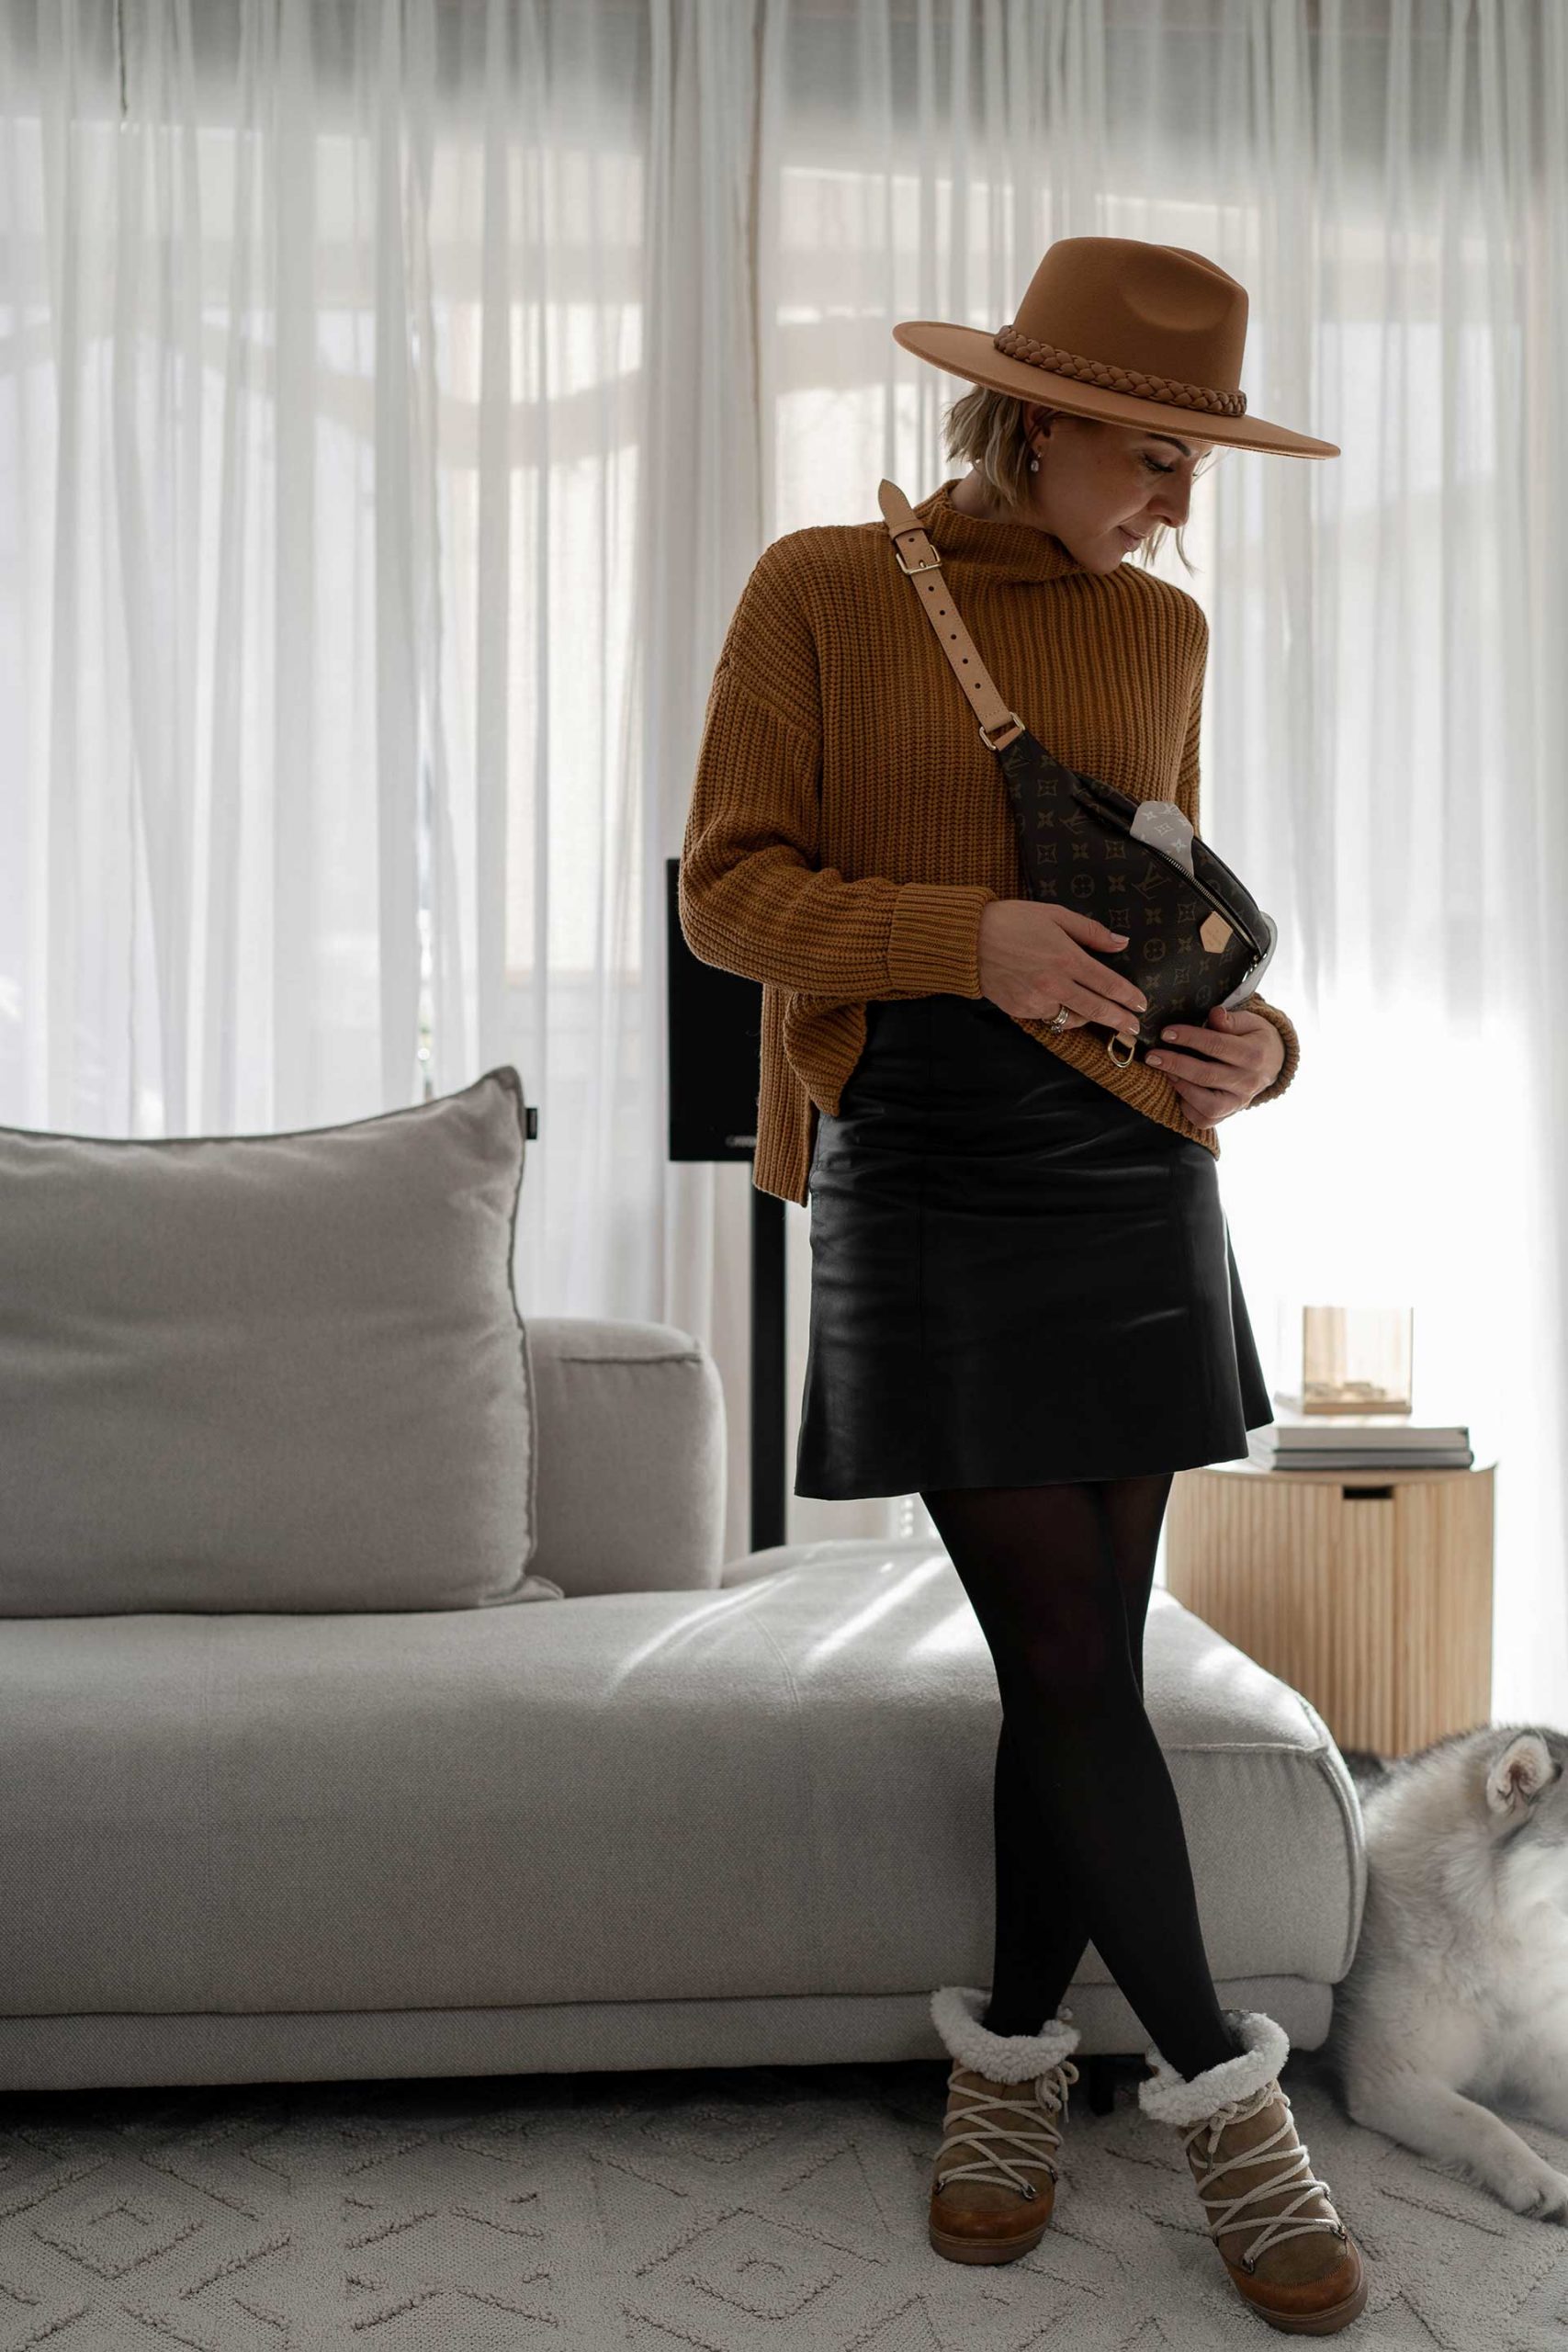 Anzeige. 3 Outfit-Ideen für den Winter mit einem schwarzen Lederrock gibt es jetzt auf meinem Fashionblog. www.whoismocca.com